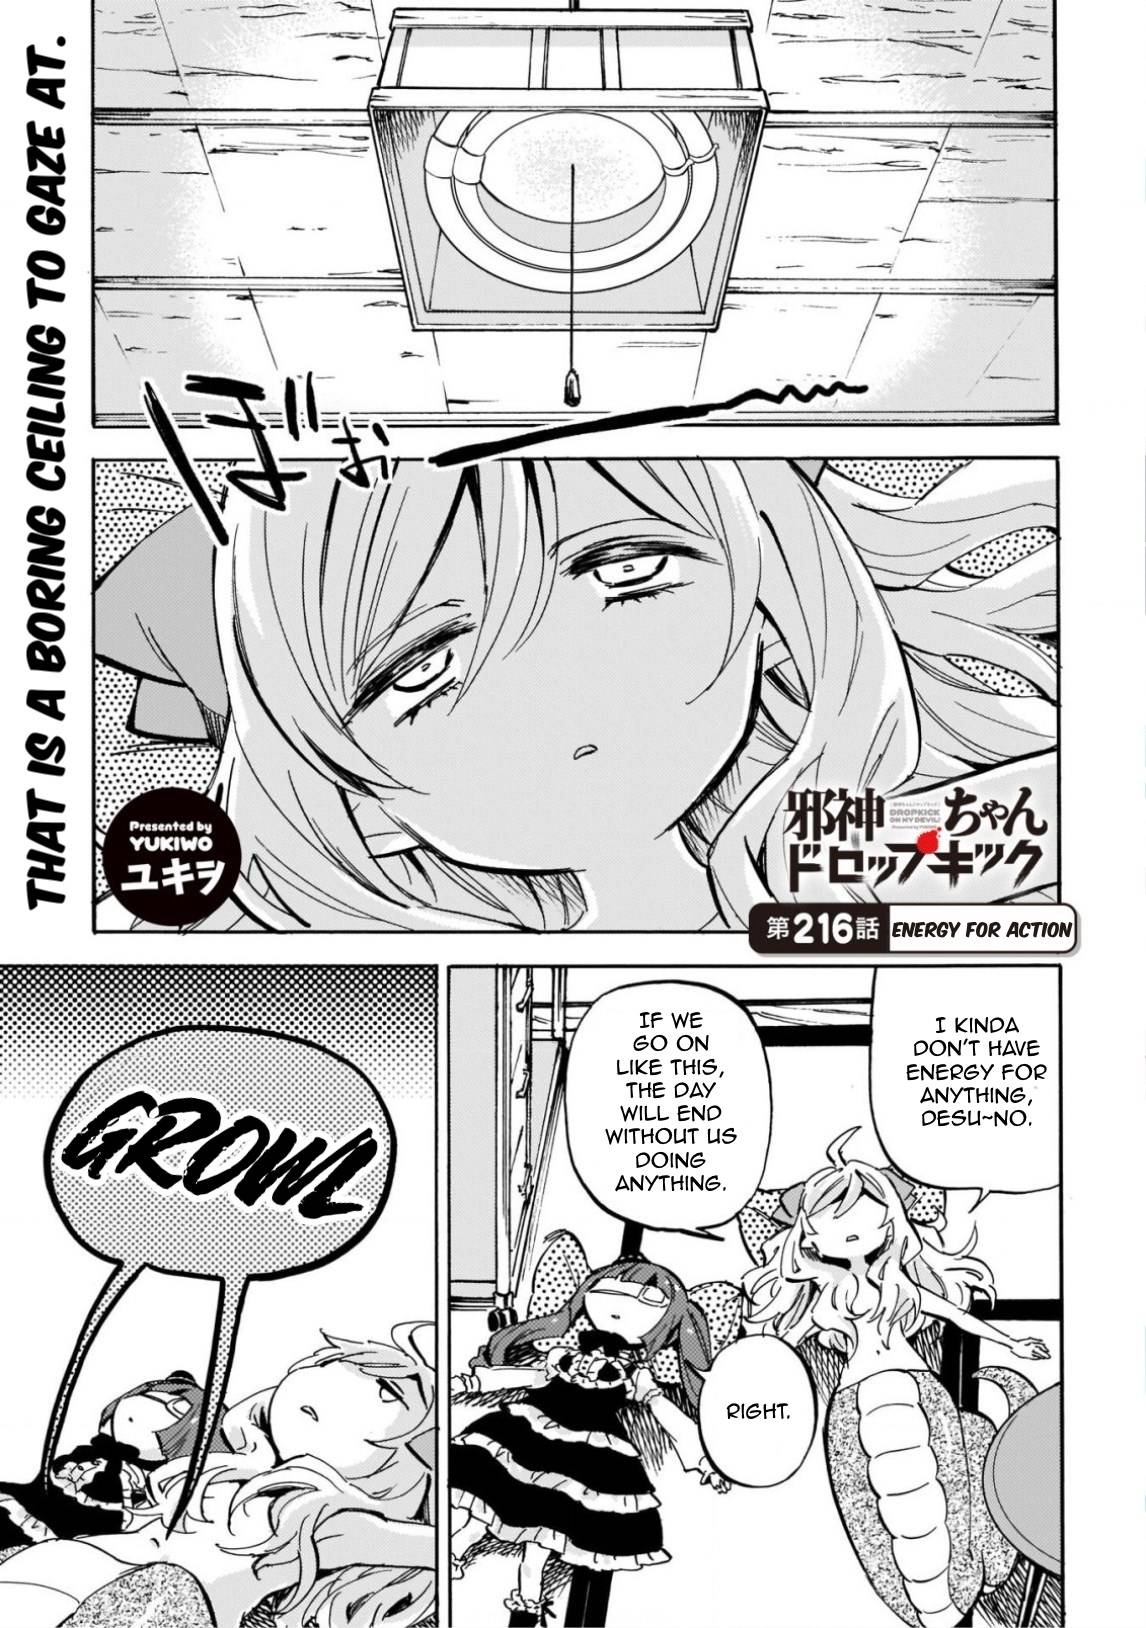 Jashin-chan Dropkick chapter 216 page 1